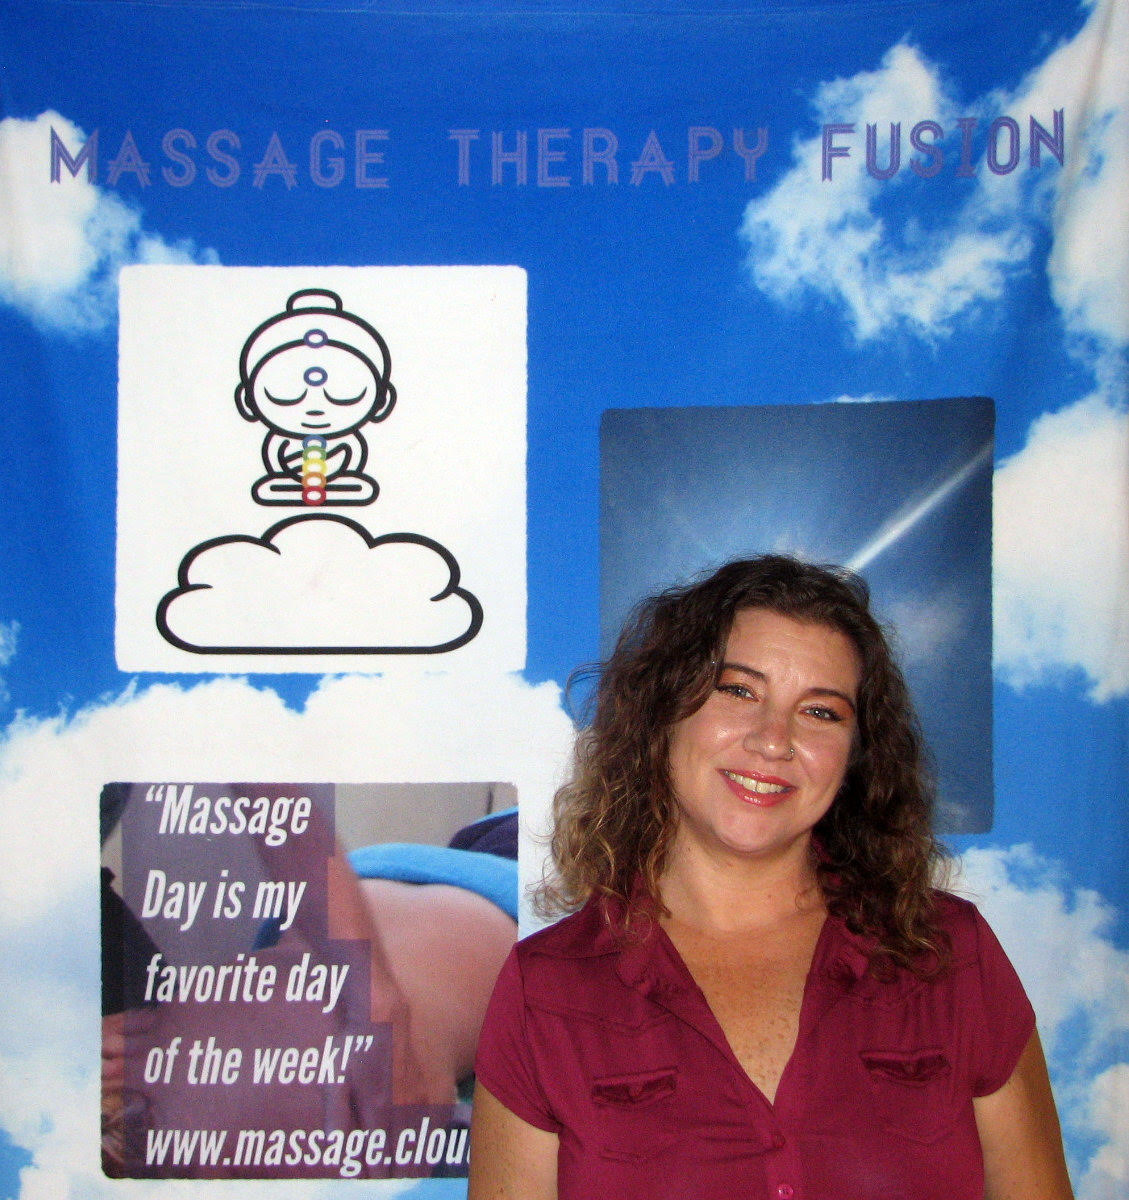 Christina Massage